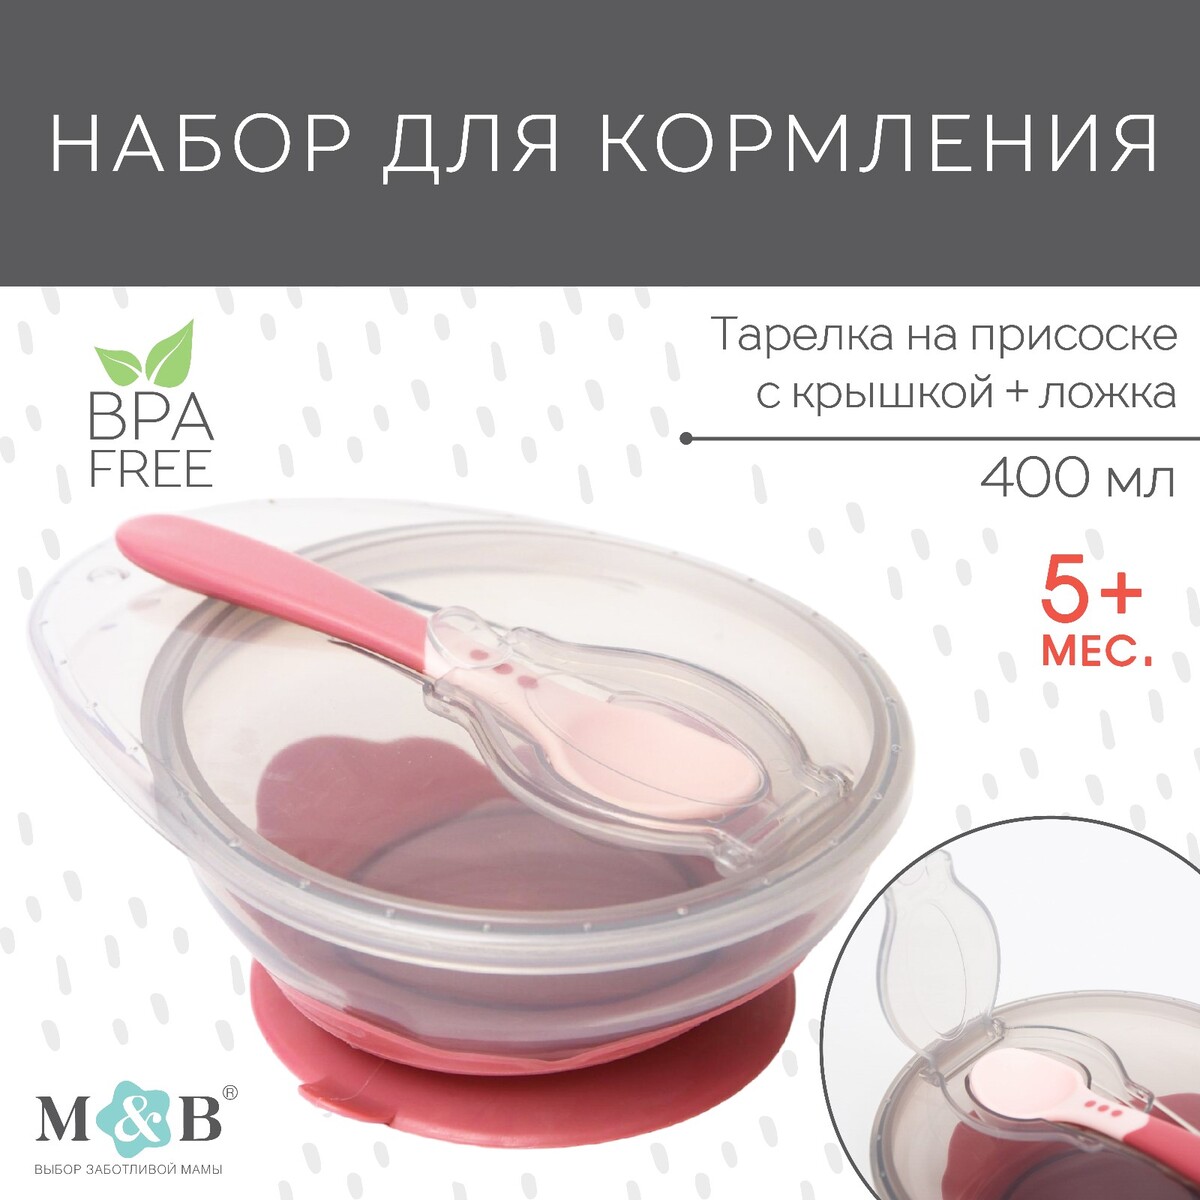 Набор для кормления: миска на присоске, с крышкой + ложка, цвет розовый, 400 мл. миска с крышкой 12 см gefu муово